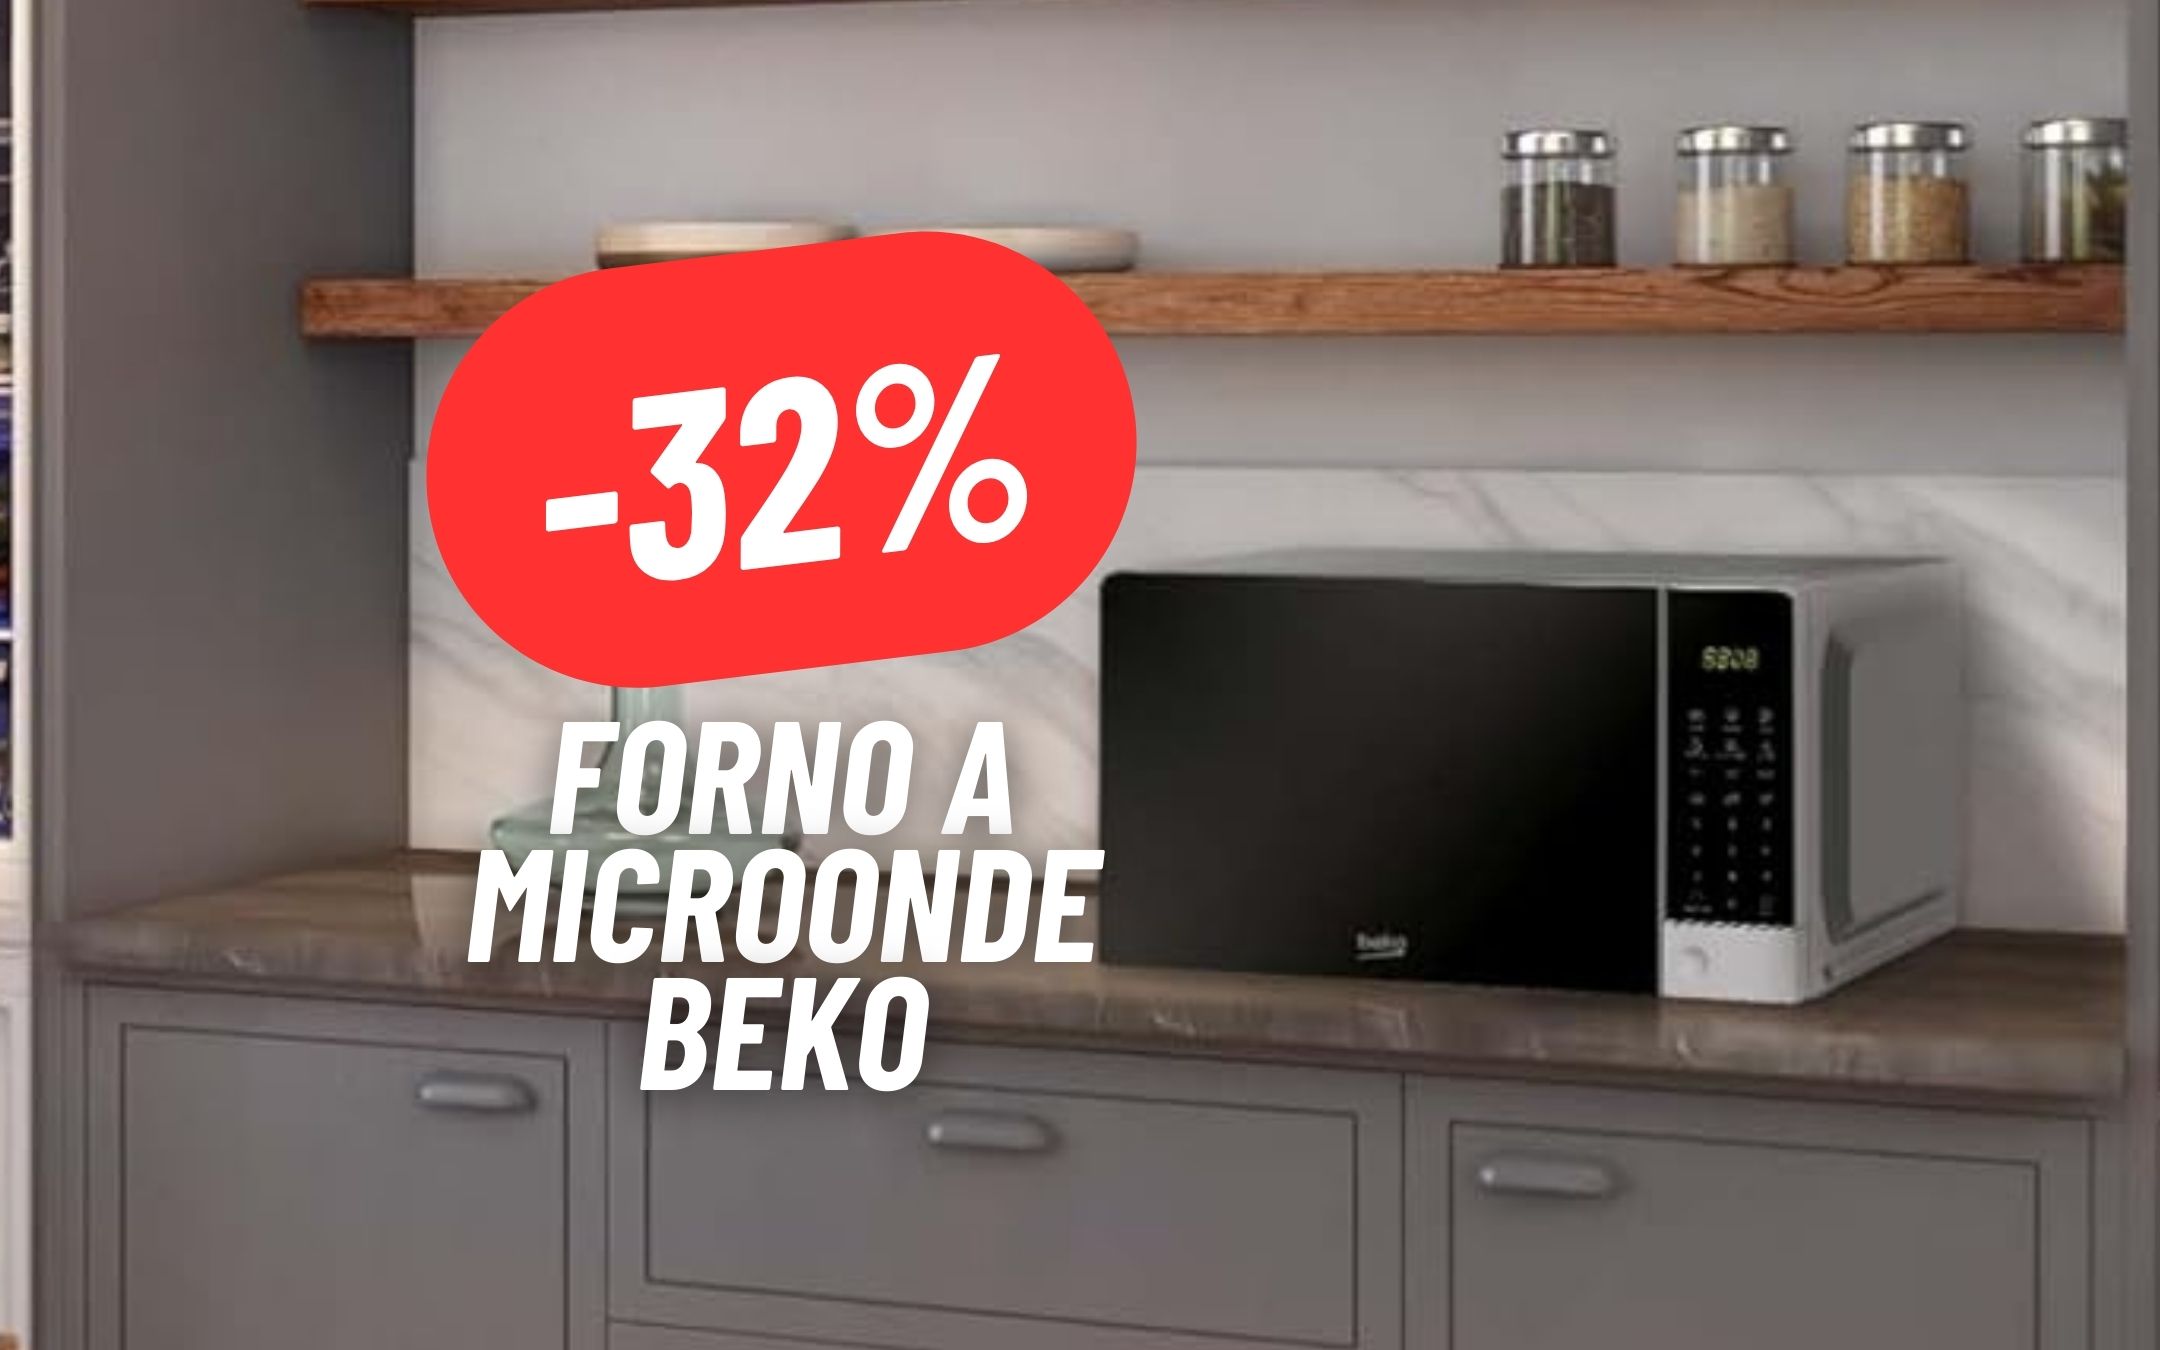 L'alleato perfetto in cucina è Beko: Forno a Microonde al 32% DI